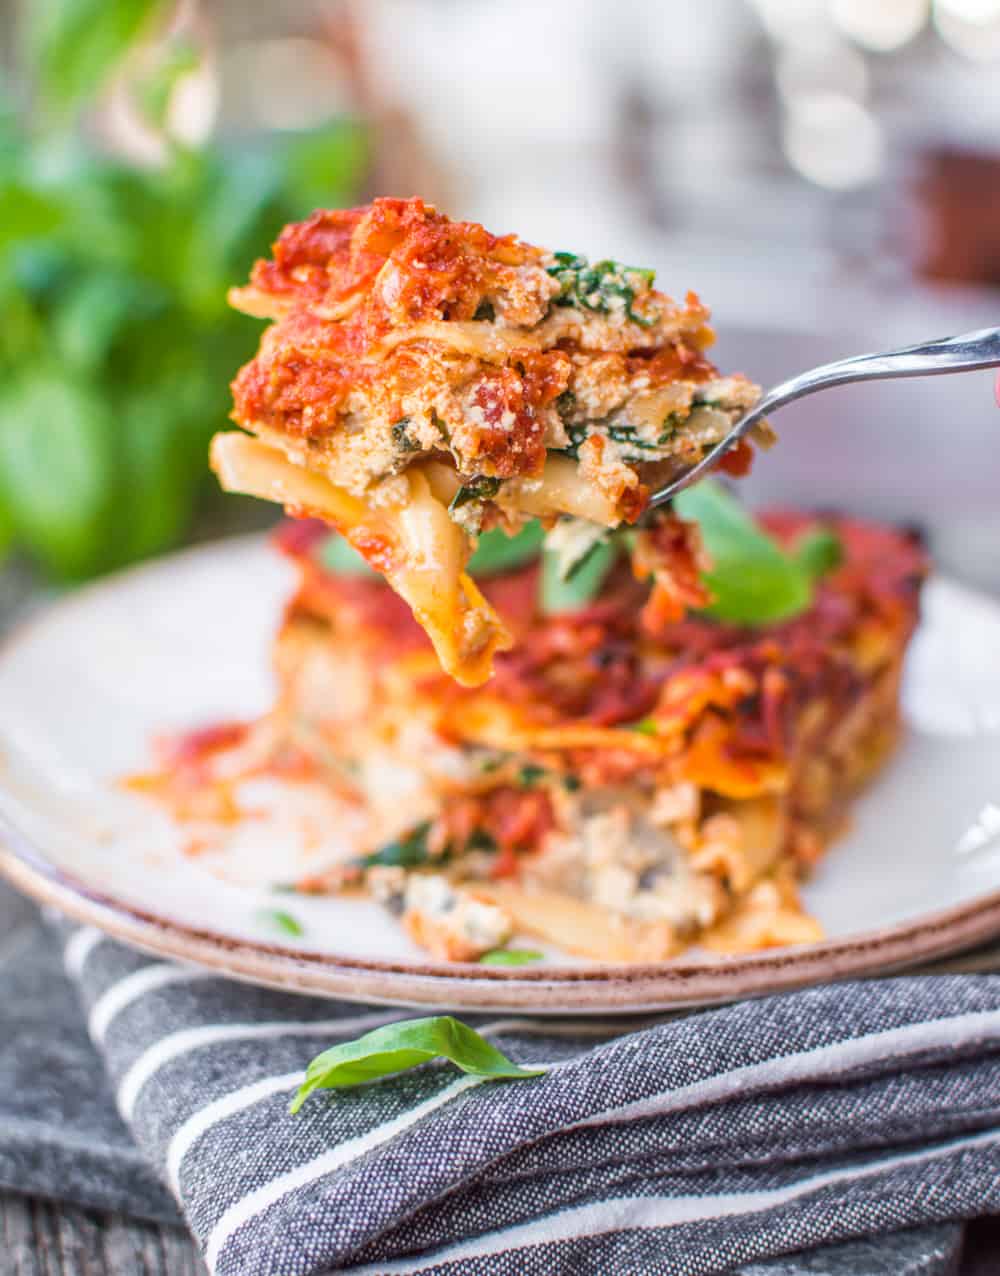 A forkful of vegan lasagna.